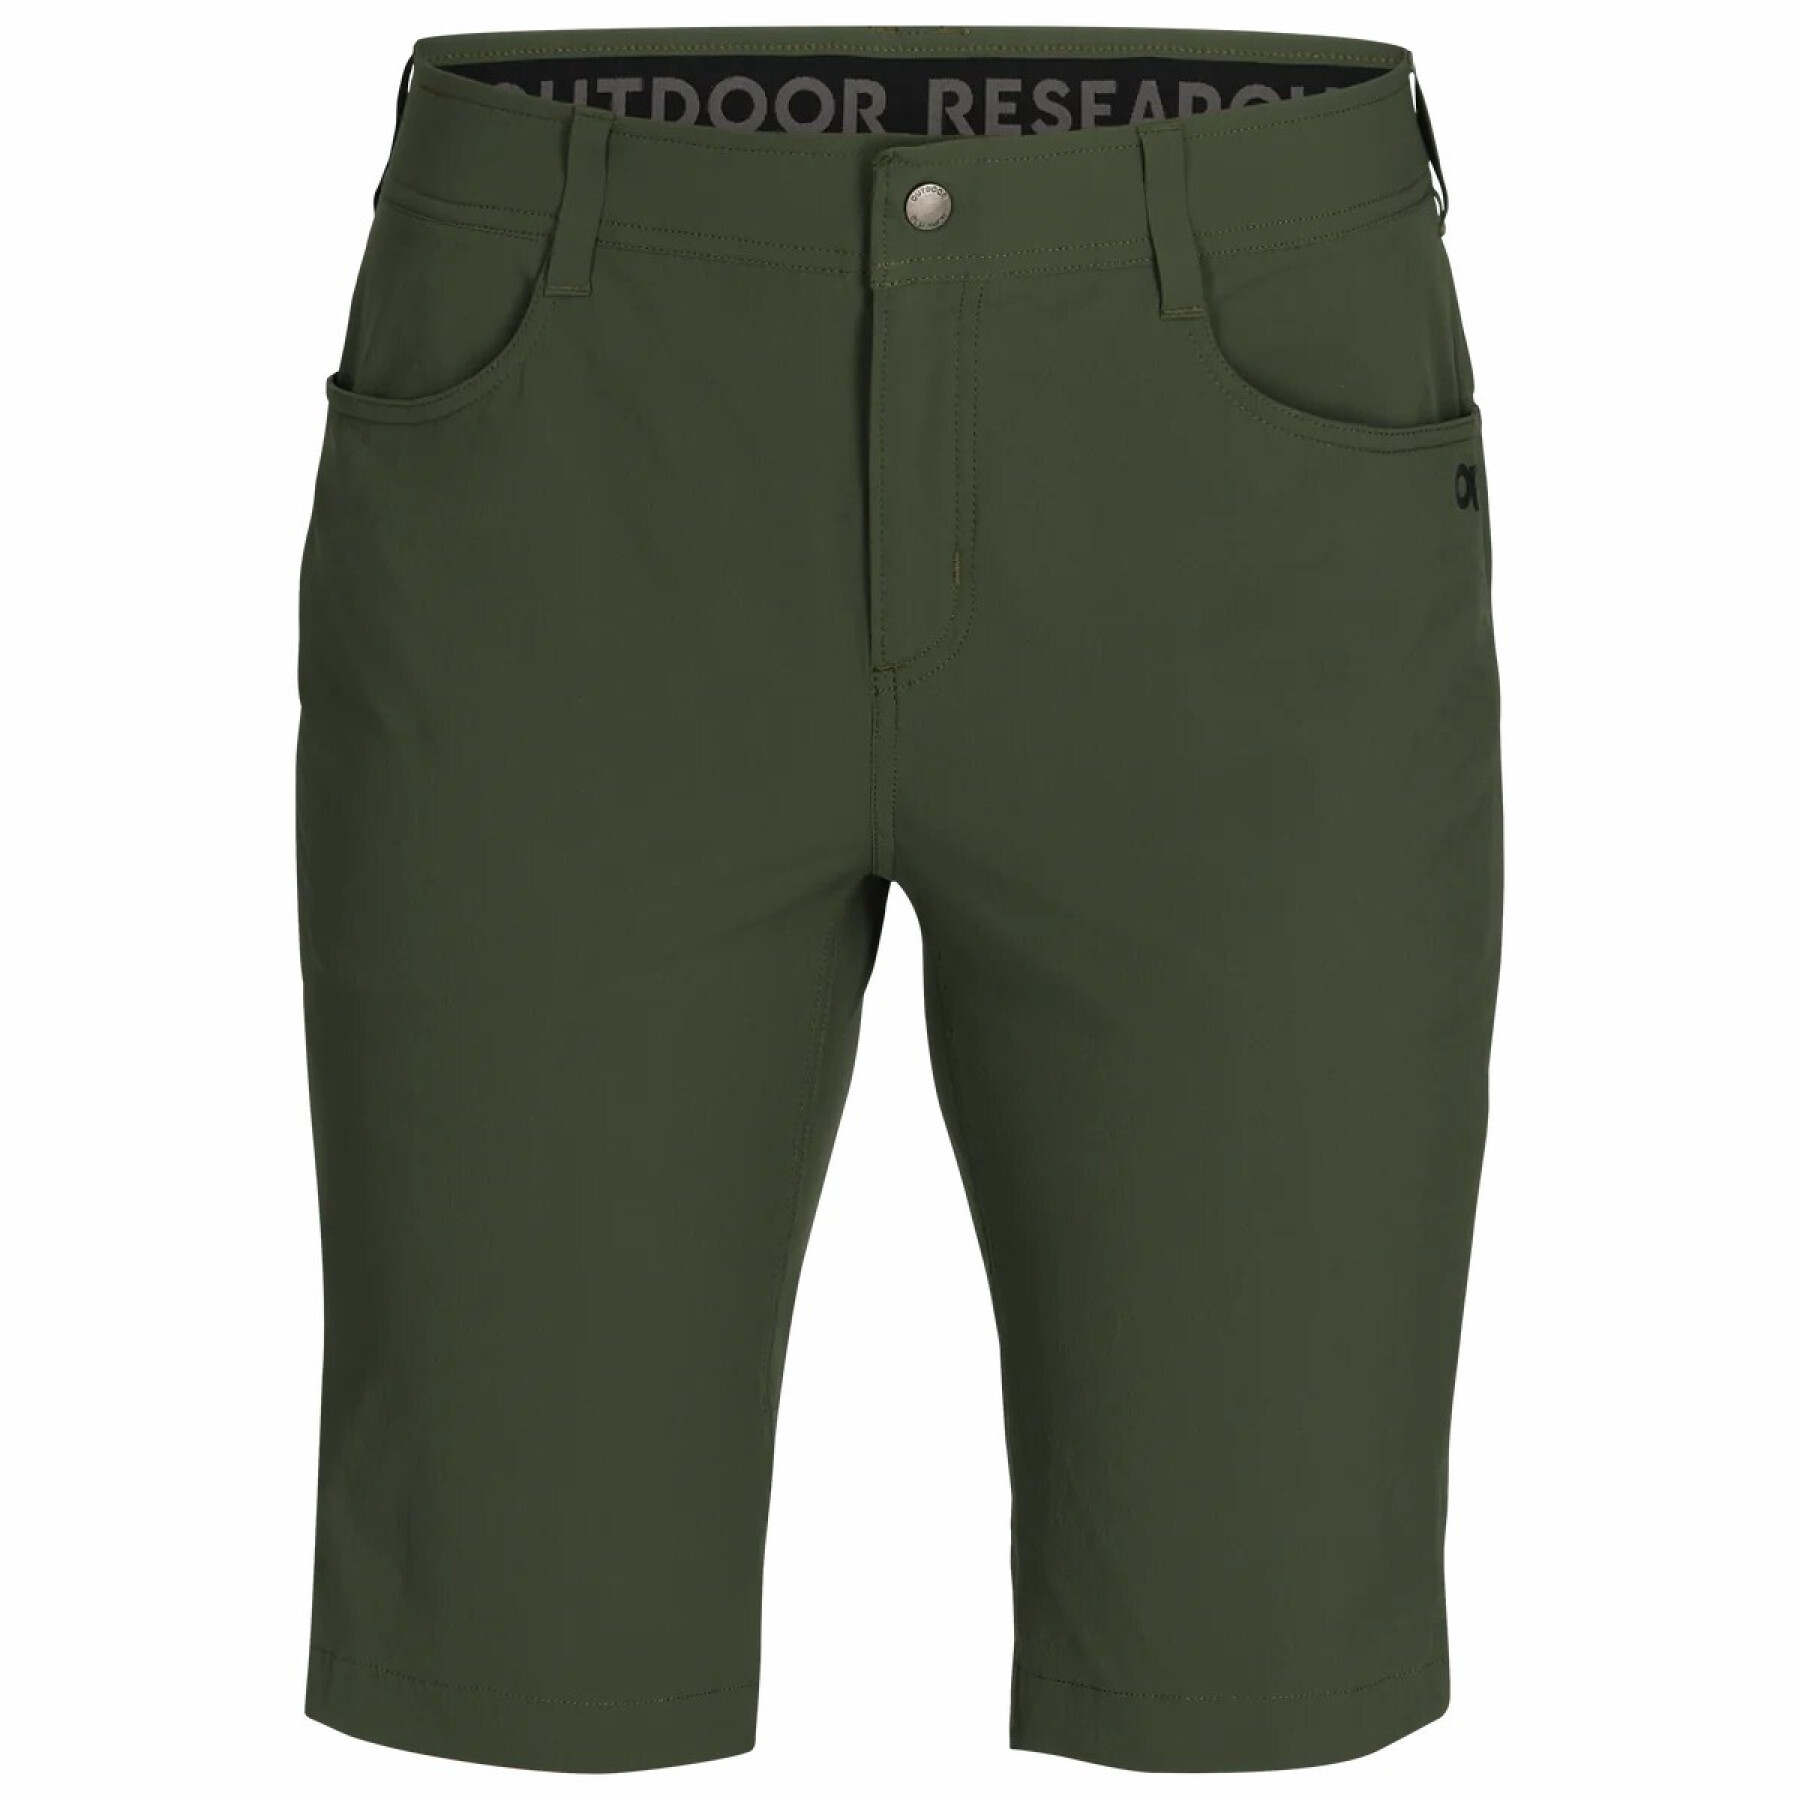 Pantalones cortos de mujer Outdoor Research Ferrosi